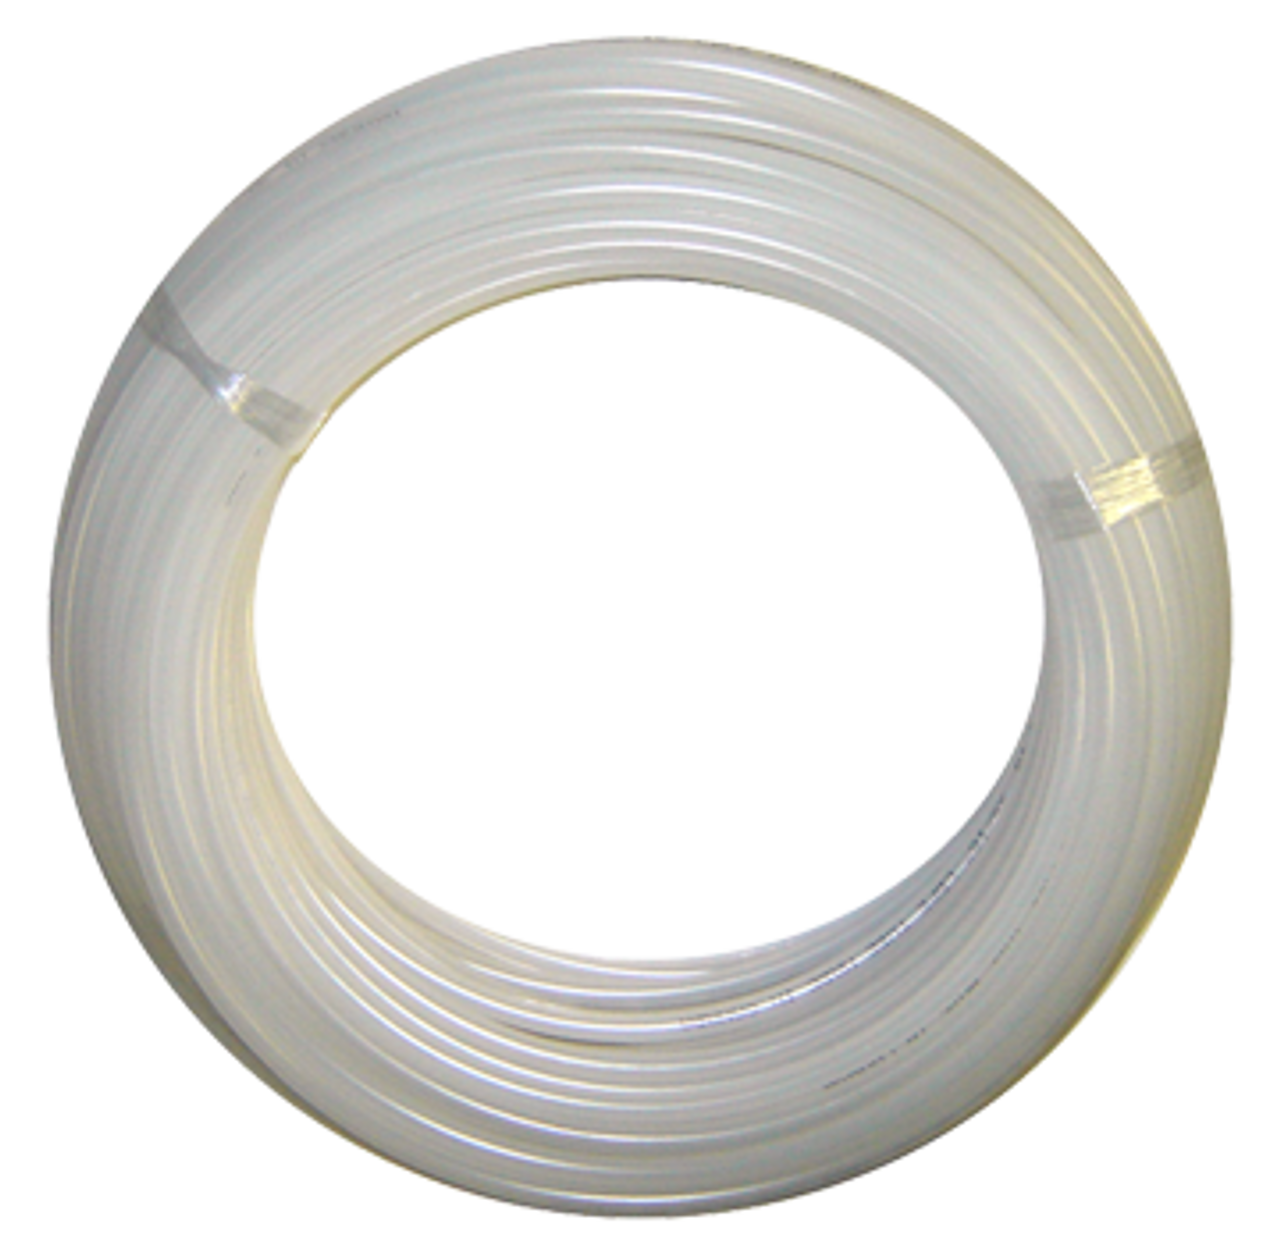 1/4" x 1000' High Density White Polyethylene Tube  359-4-1000